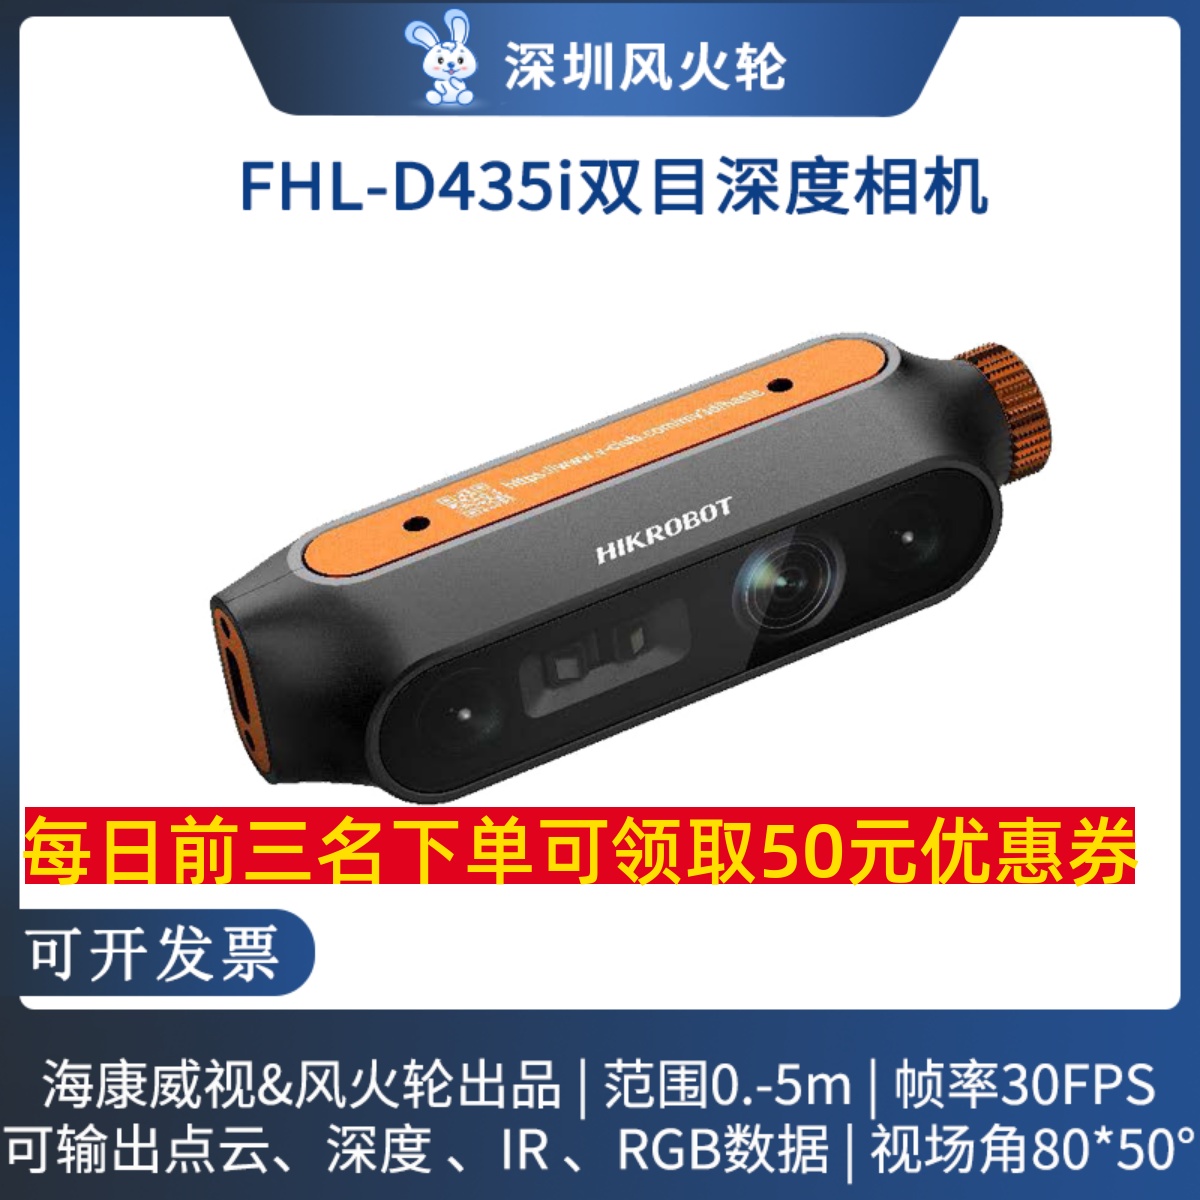 风火轮&海康威视 FHL-D435i双目感知相机 MV-EB43i 深度摄像头